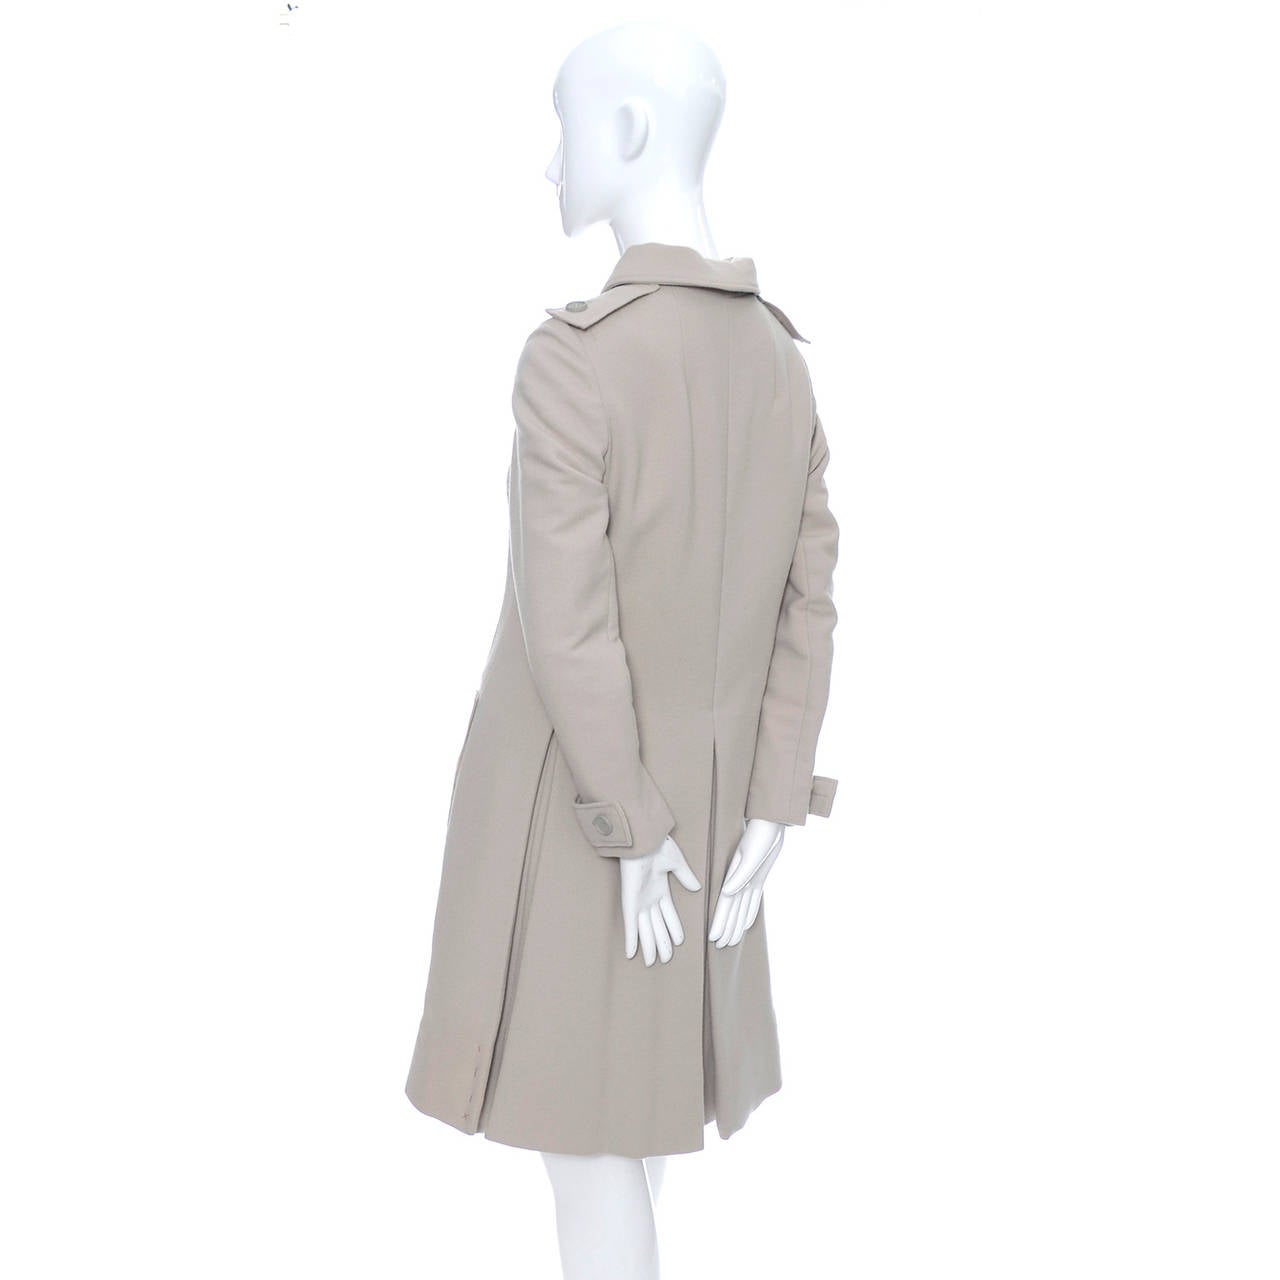 Women's 1960s Geoffrey Beene Vintage Coat Dress Saks Fifth Avenue Never Worn